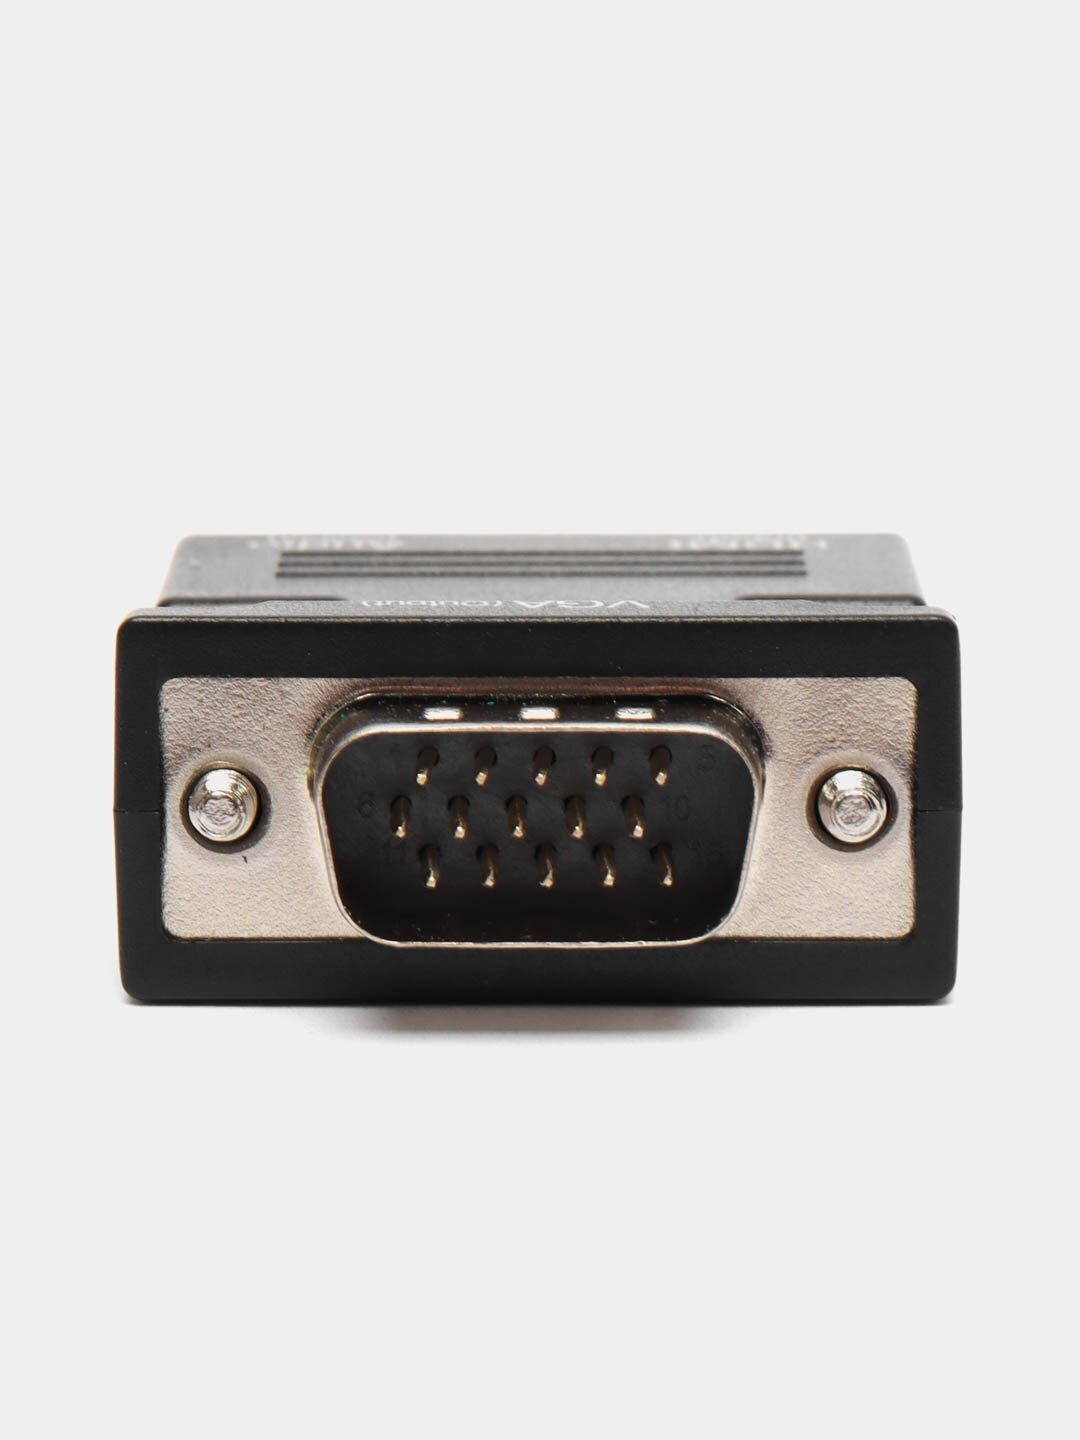 Портативный адаптер переходник конвертер HDMI - VGA с аудио выходом 35 mm